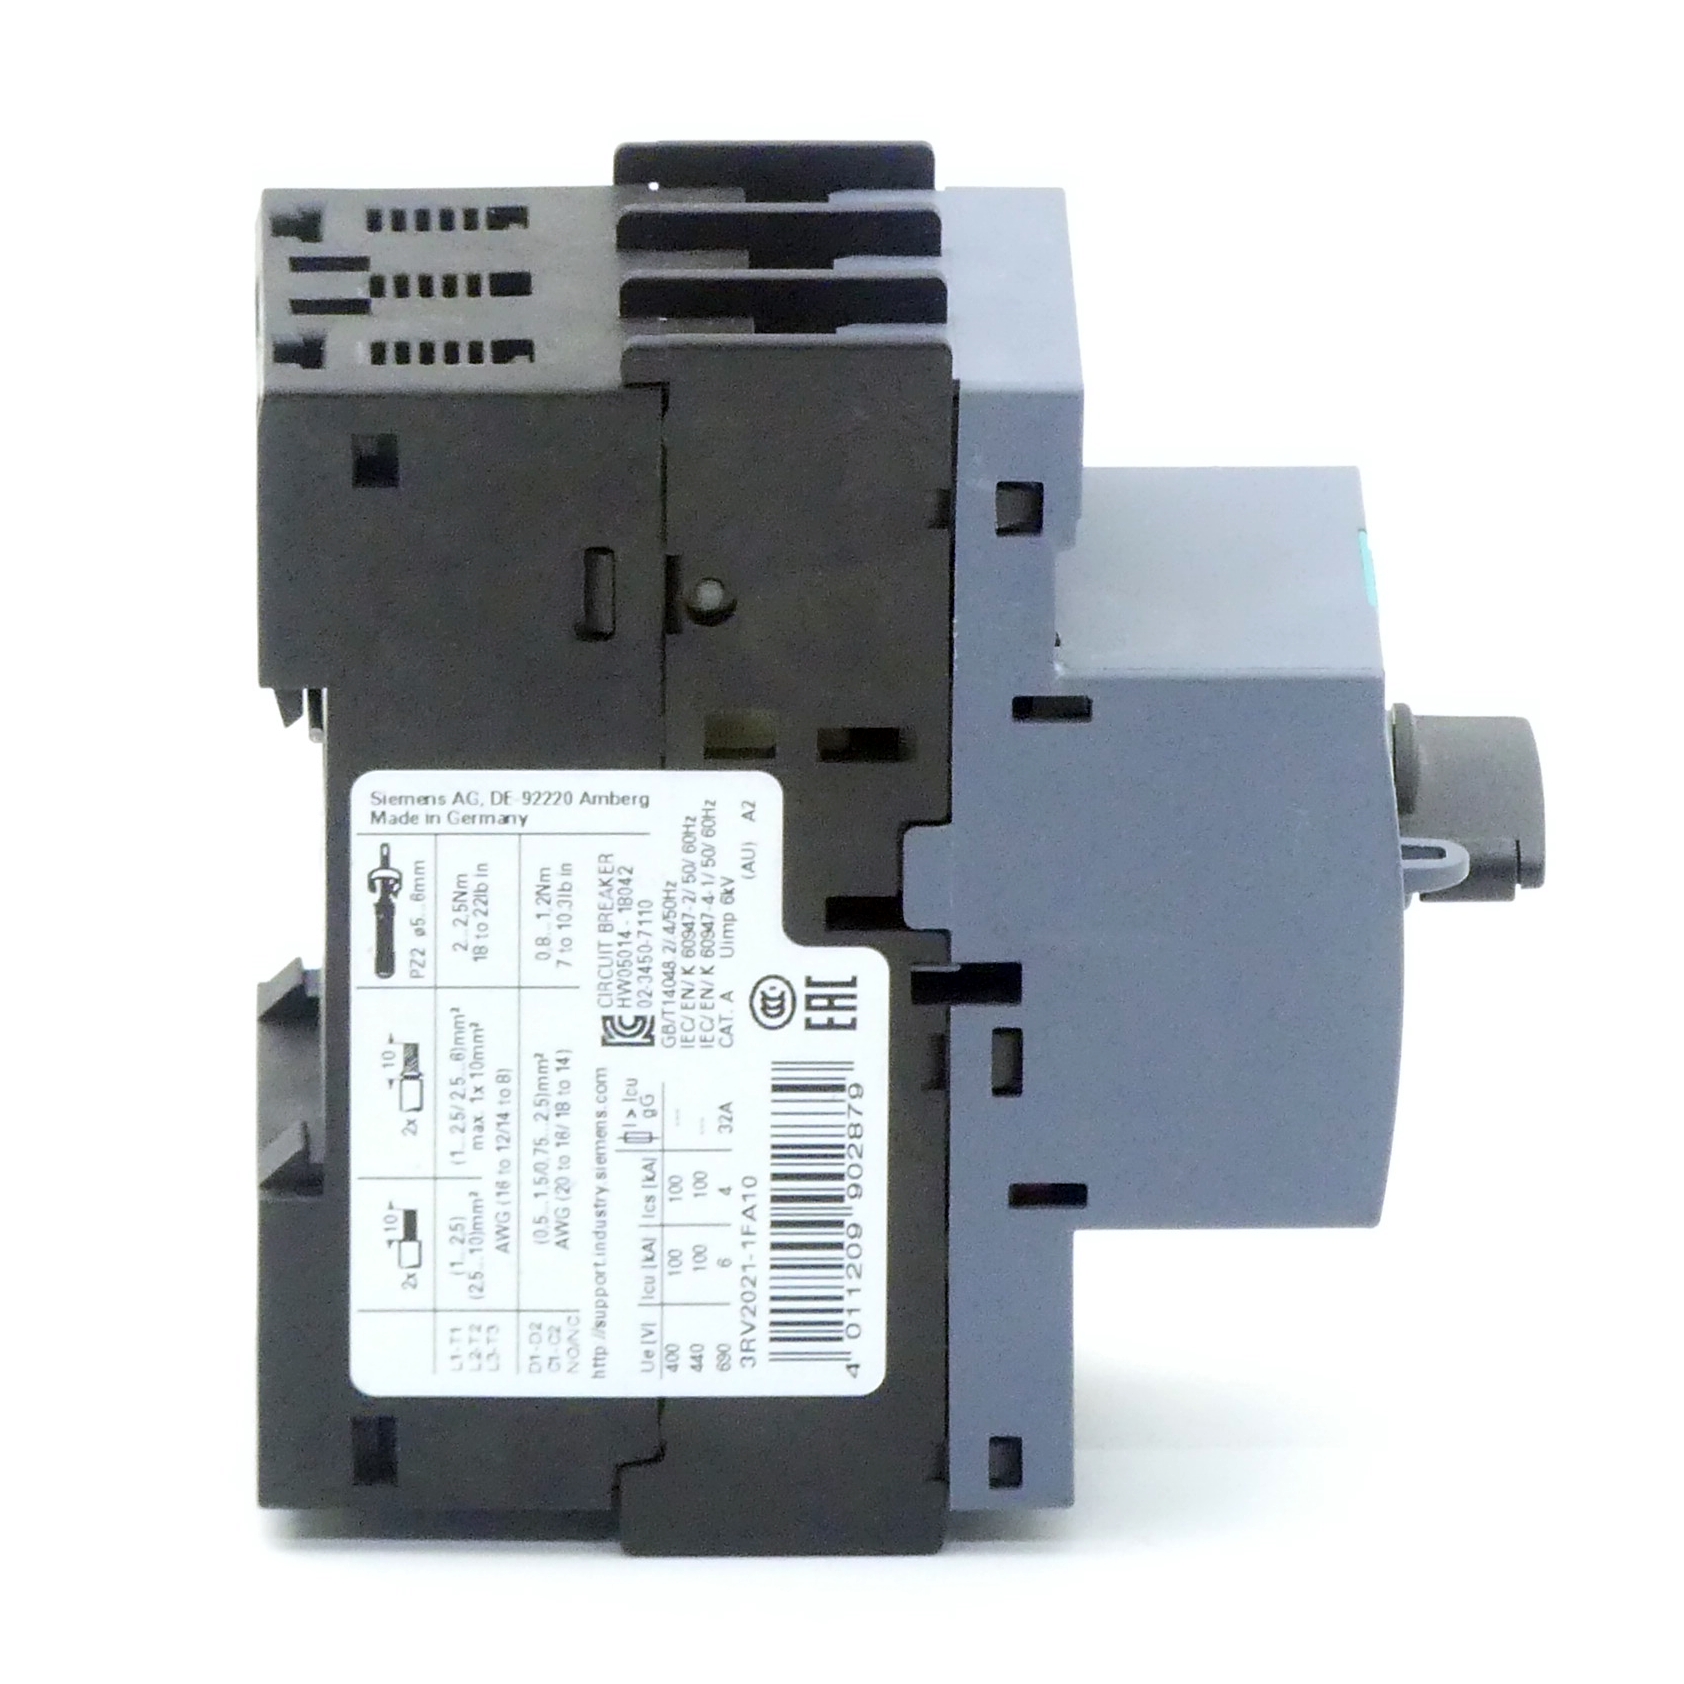 Circuit breaker 3RV2021-1FA10 